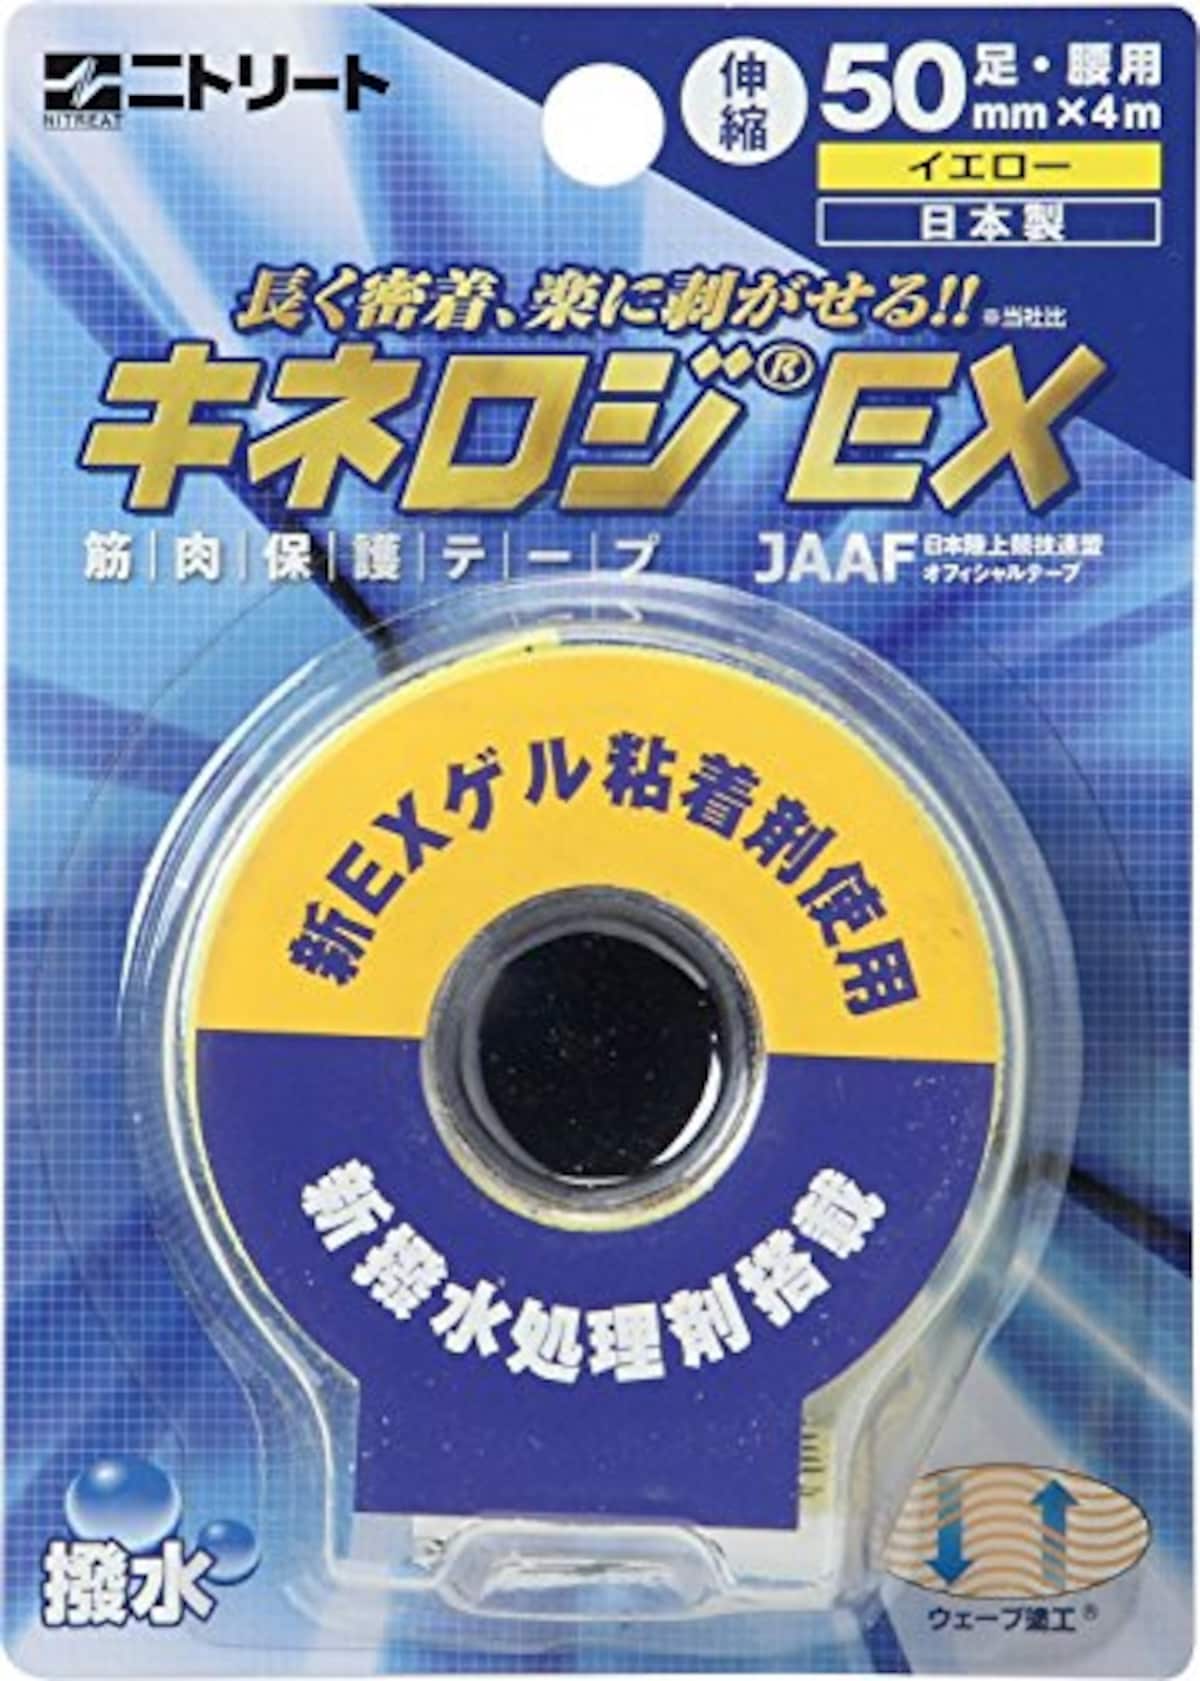 テーピング テープ 筋肉サポート用 伸縮タイプ キネシオロジーテープ キネロジEX ブリスターパック